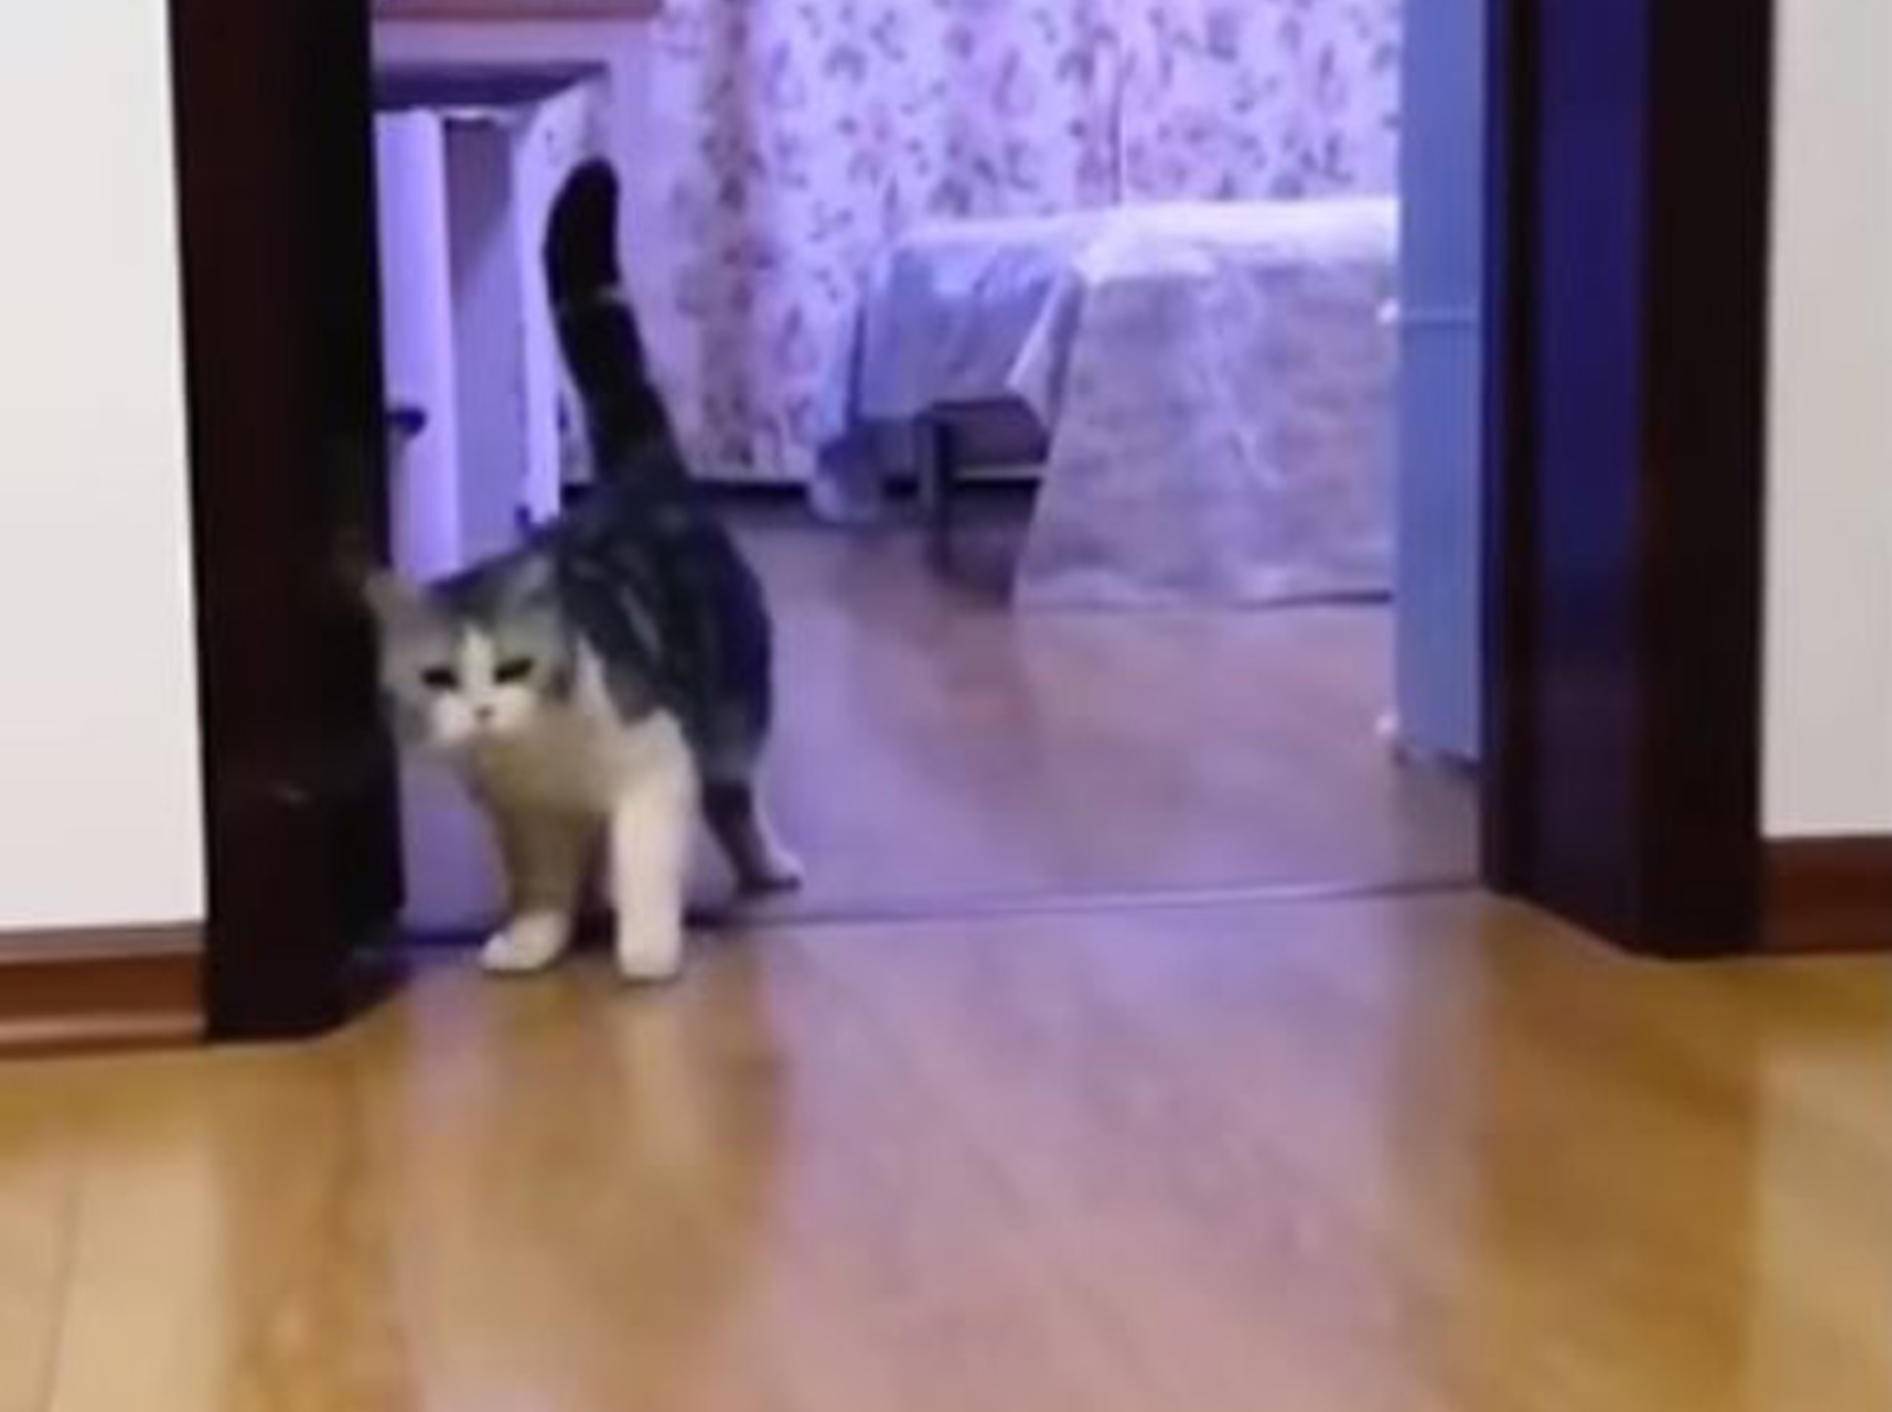 Katze schaut verwirrt - Bild: YouTube / Piyush Basak